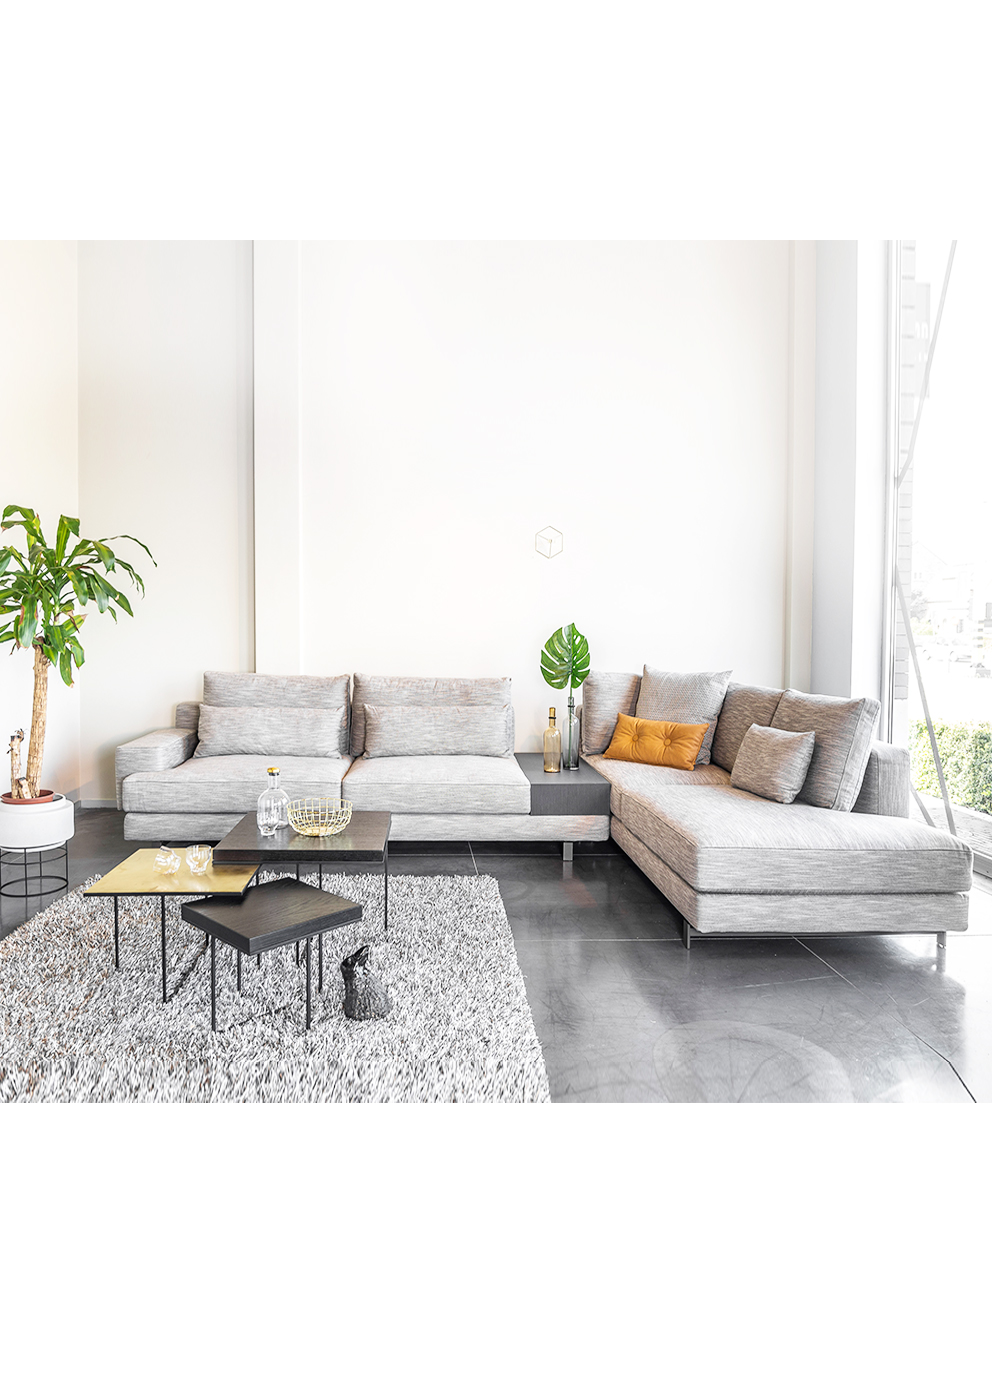 Sinds Ingrijpen Van streek Evolution Design Meubelen: Marmont Sofa | Design Hoekzetel van Nú!